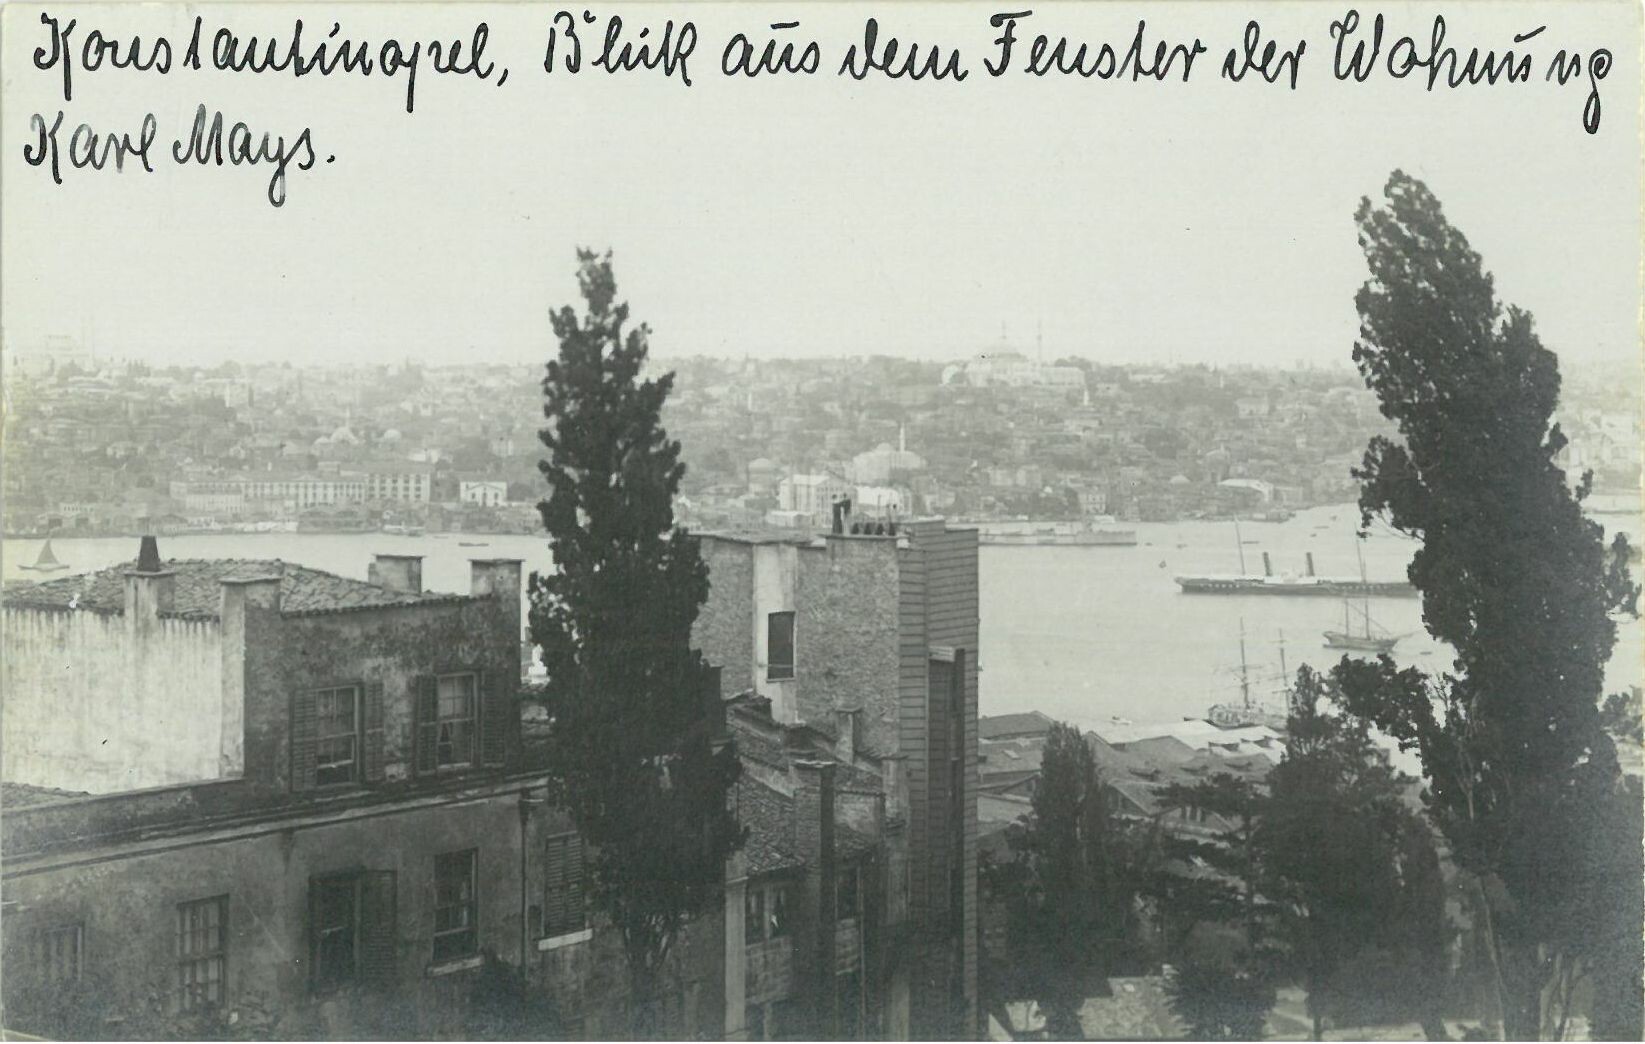 Karl May Karte, Konstantinopel, Blick aus dem Fenster der Wohnung Karl Mays (Karl-May-Museum gGmbH RR-R)